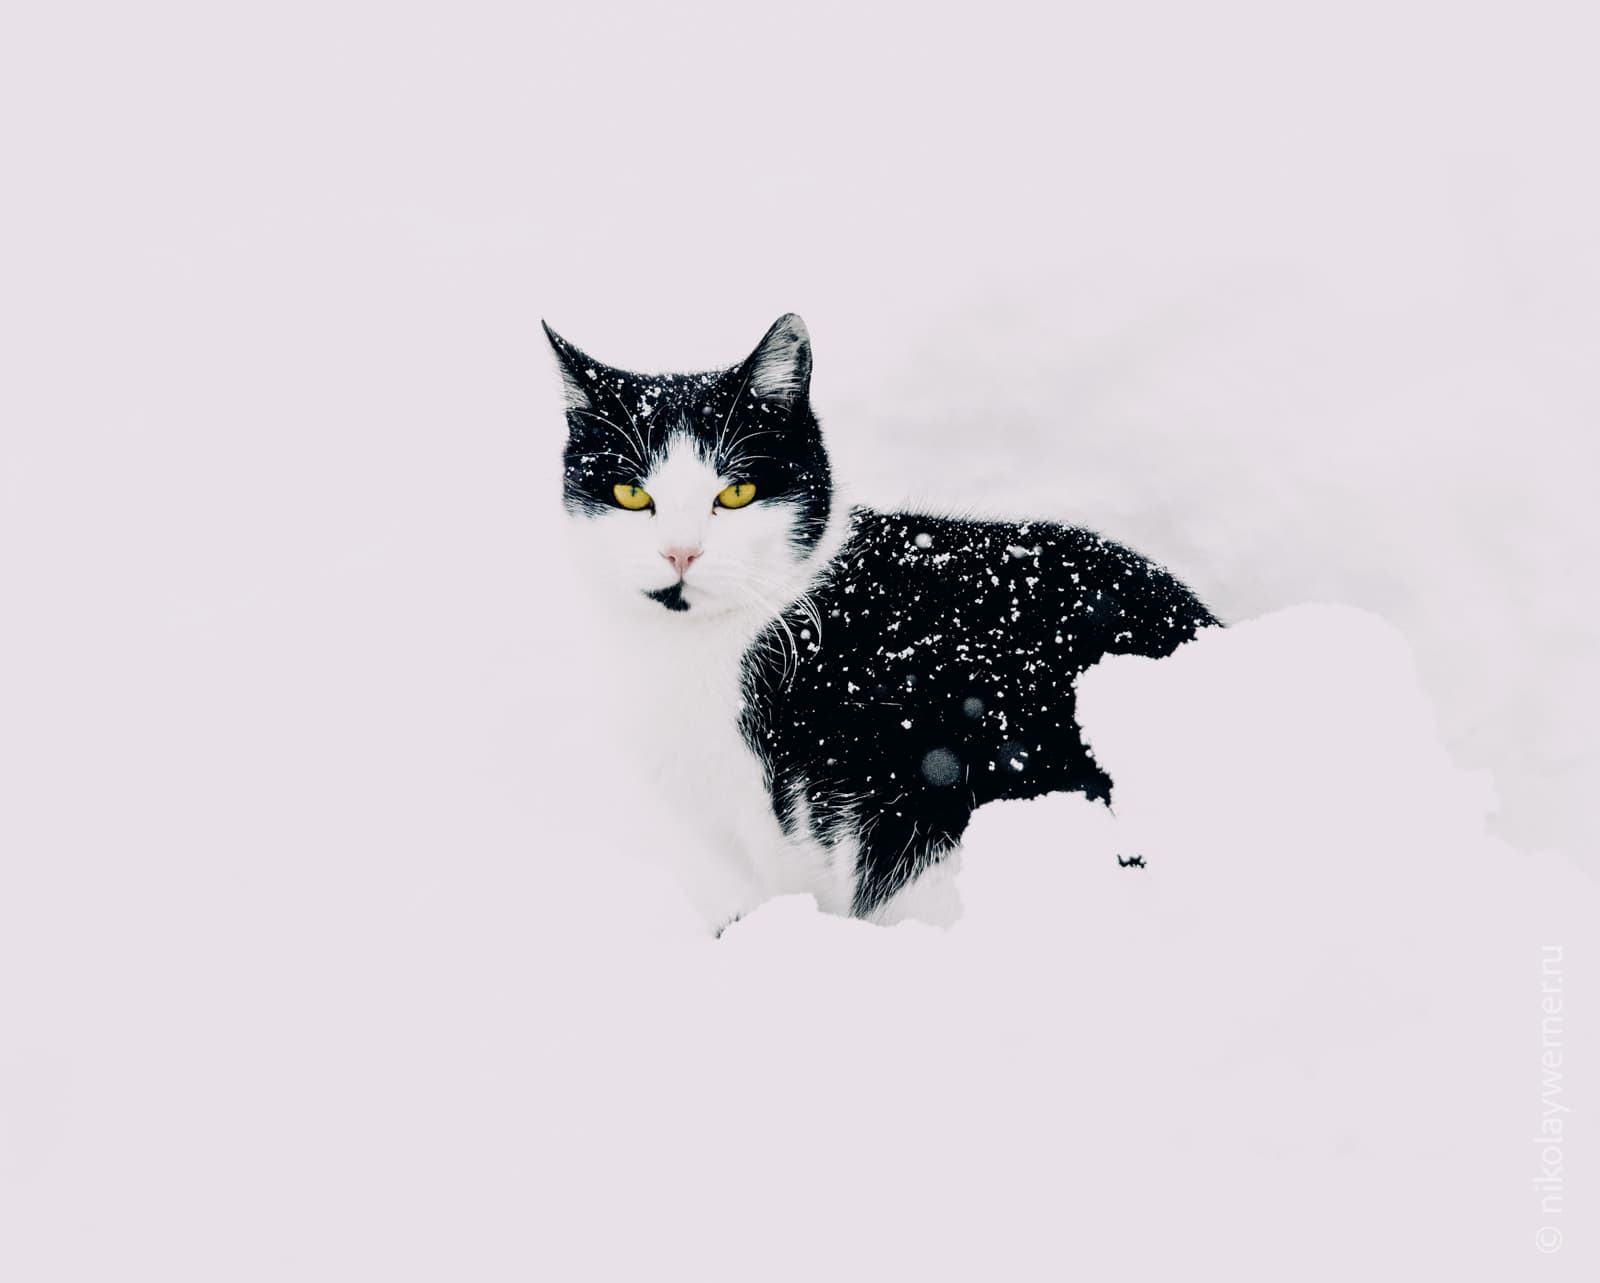 Чёрно-белый кот с ярко-жёлтыми глазами сидит в снегу и пристально смотрит в объектив